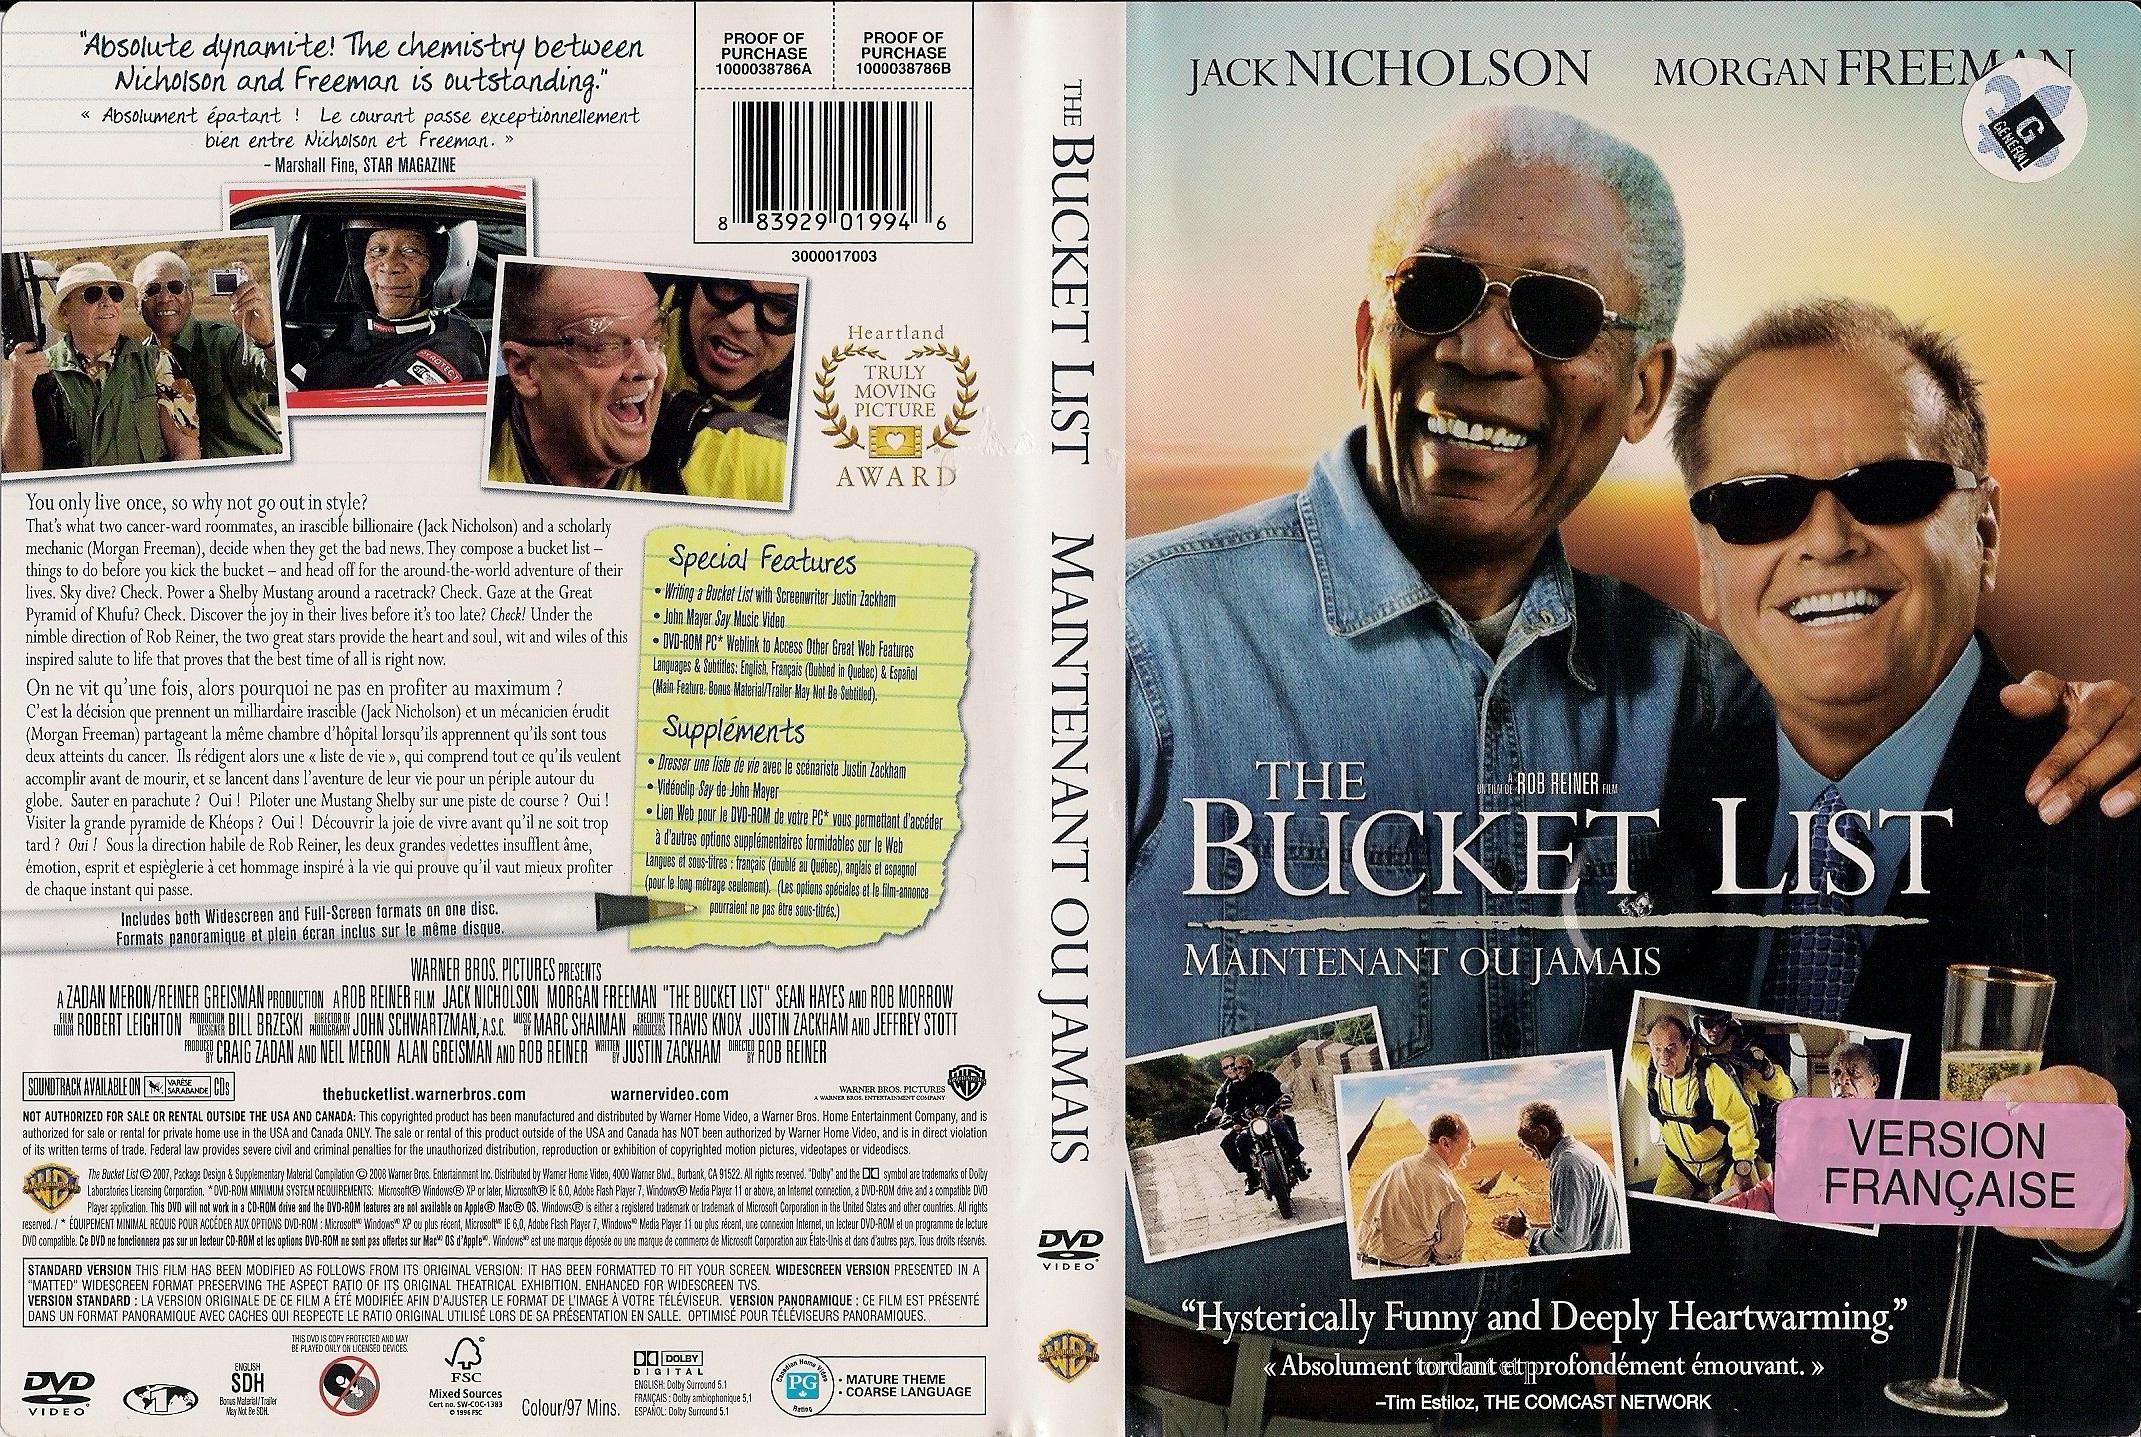 Jaquette DVD The bucket list - Maintenant ou jamais (Canadienne)